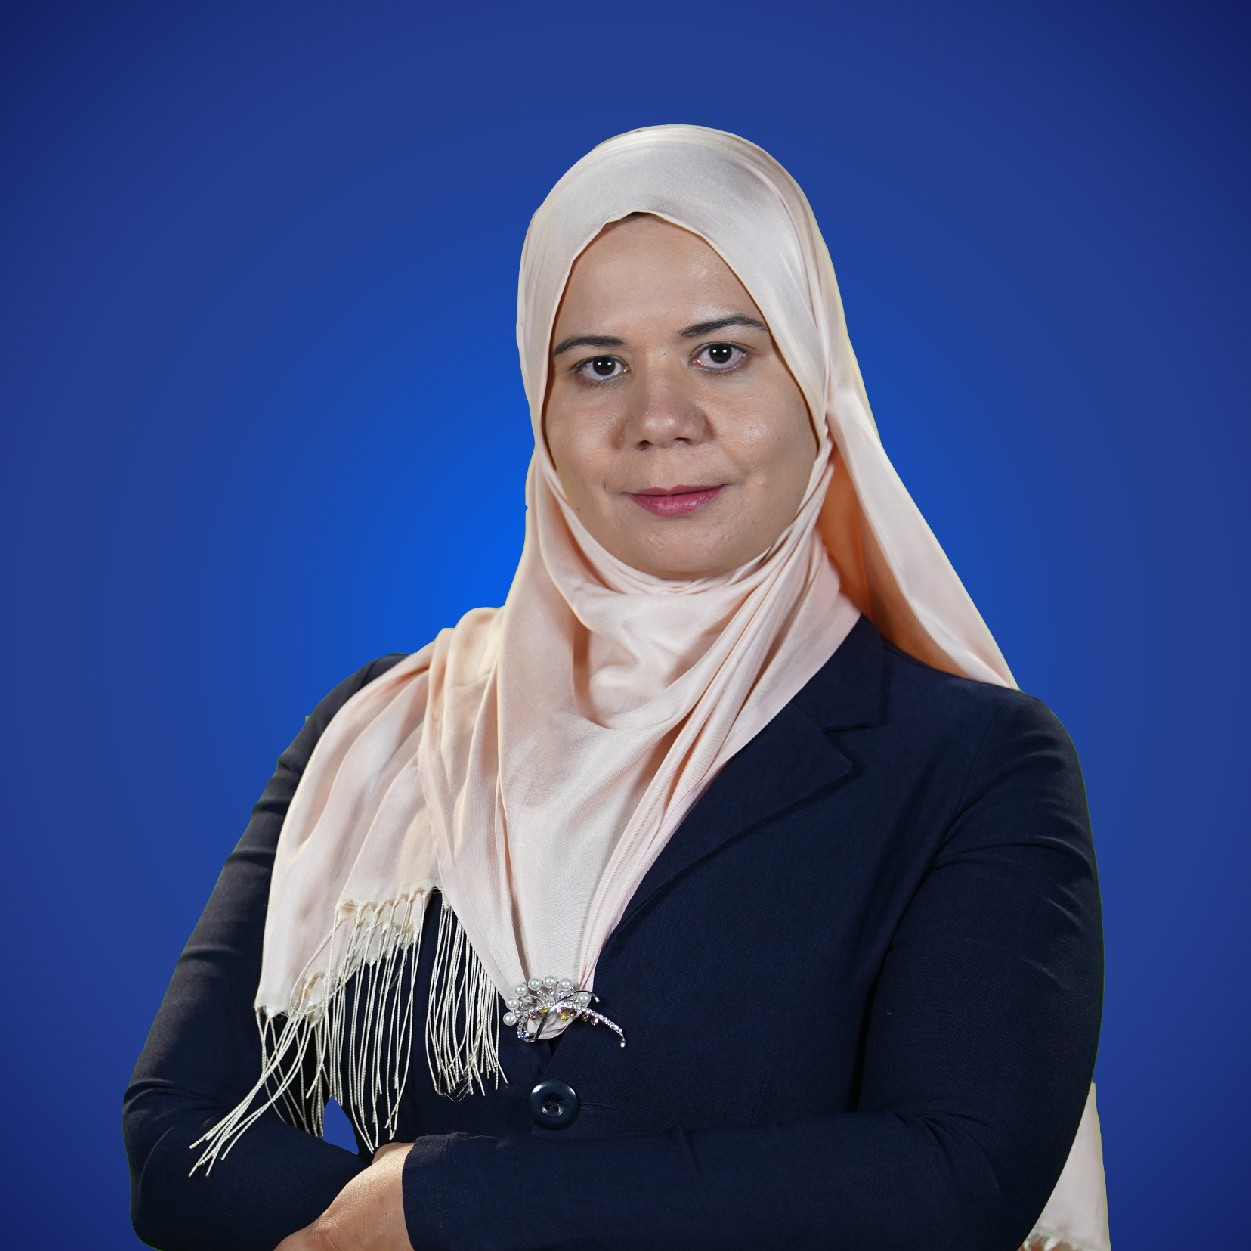 Dr. Asmaa El-Gendy